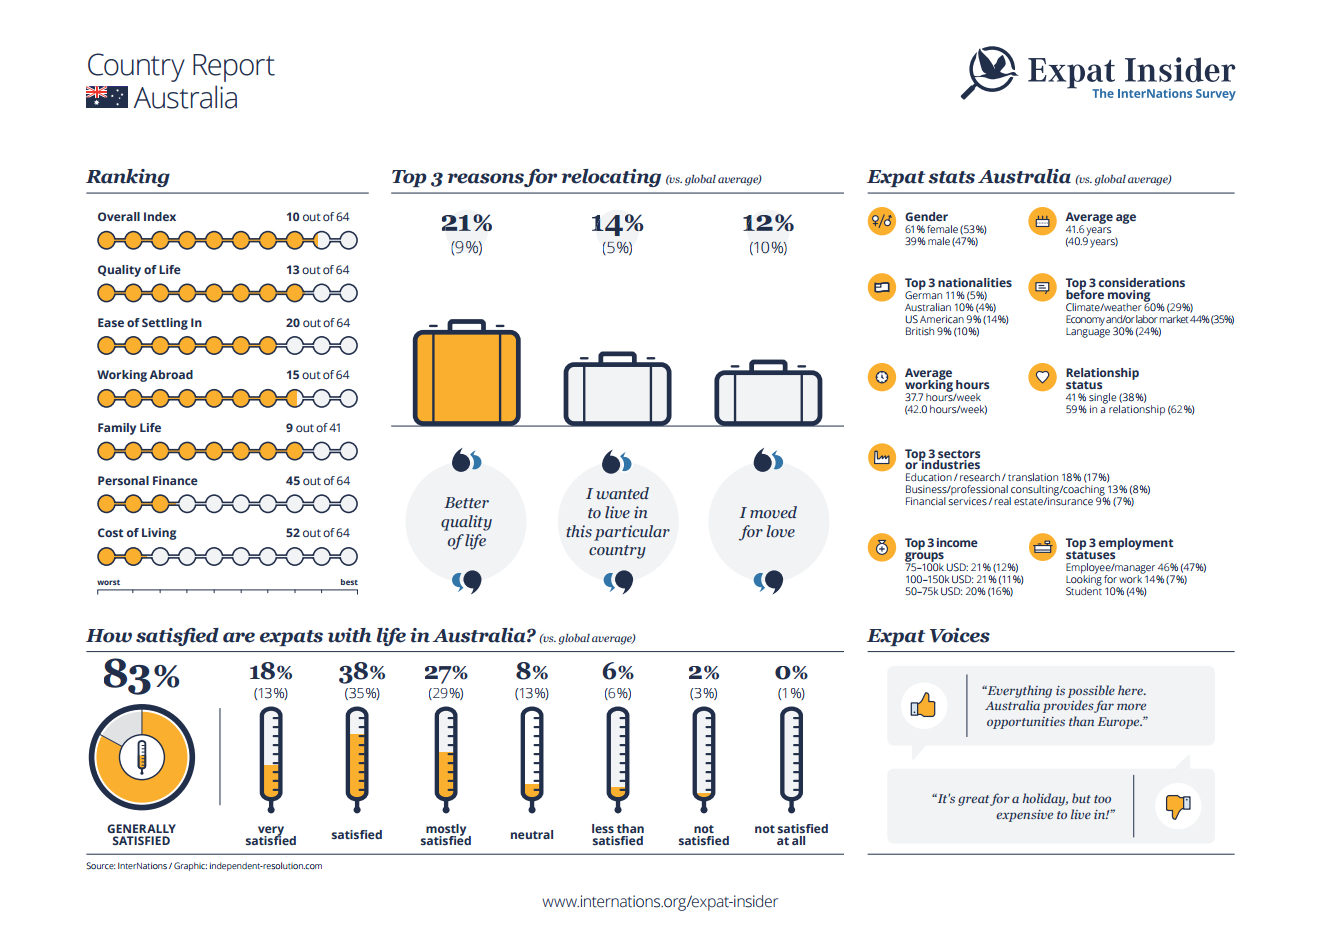 Expat statistics for Australia - infographic